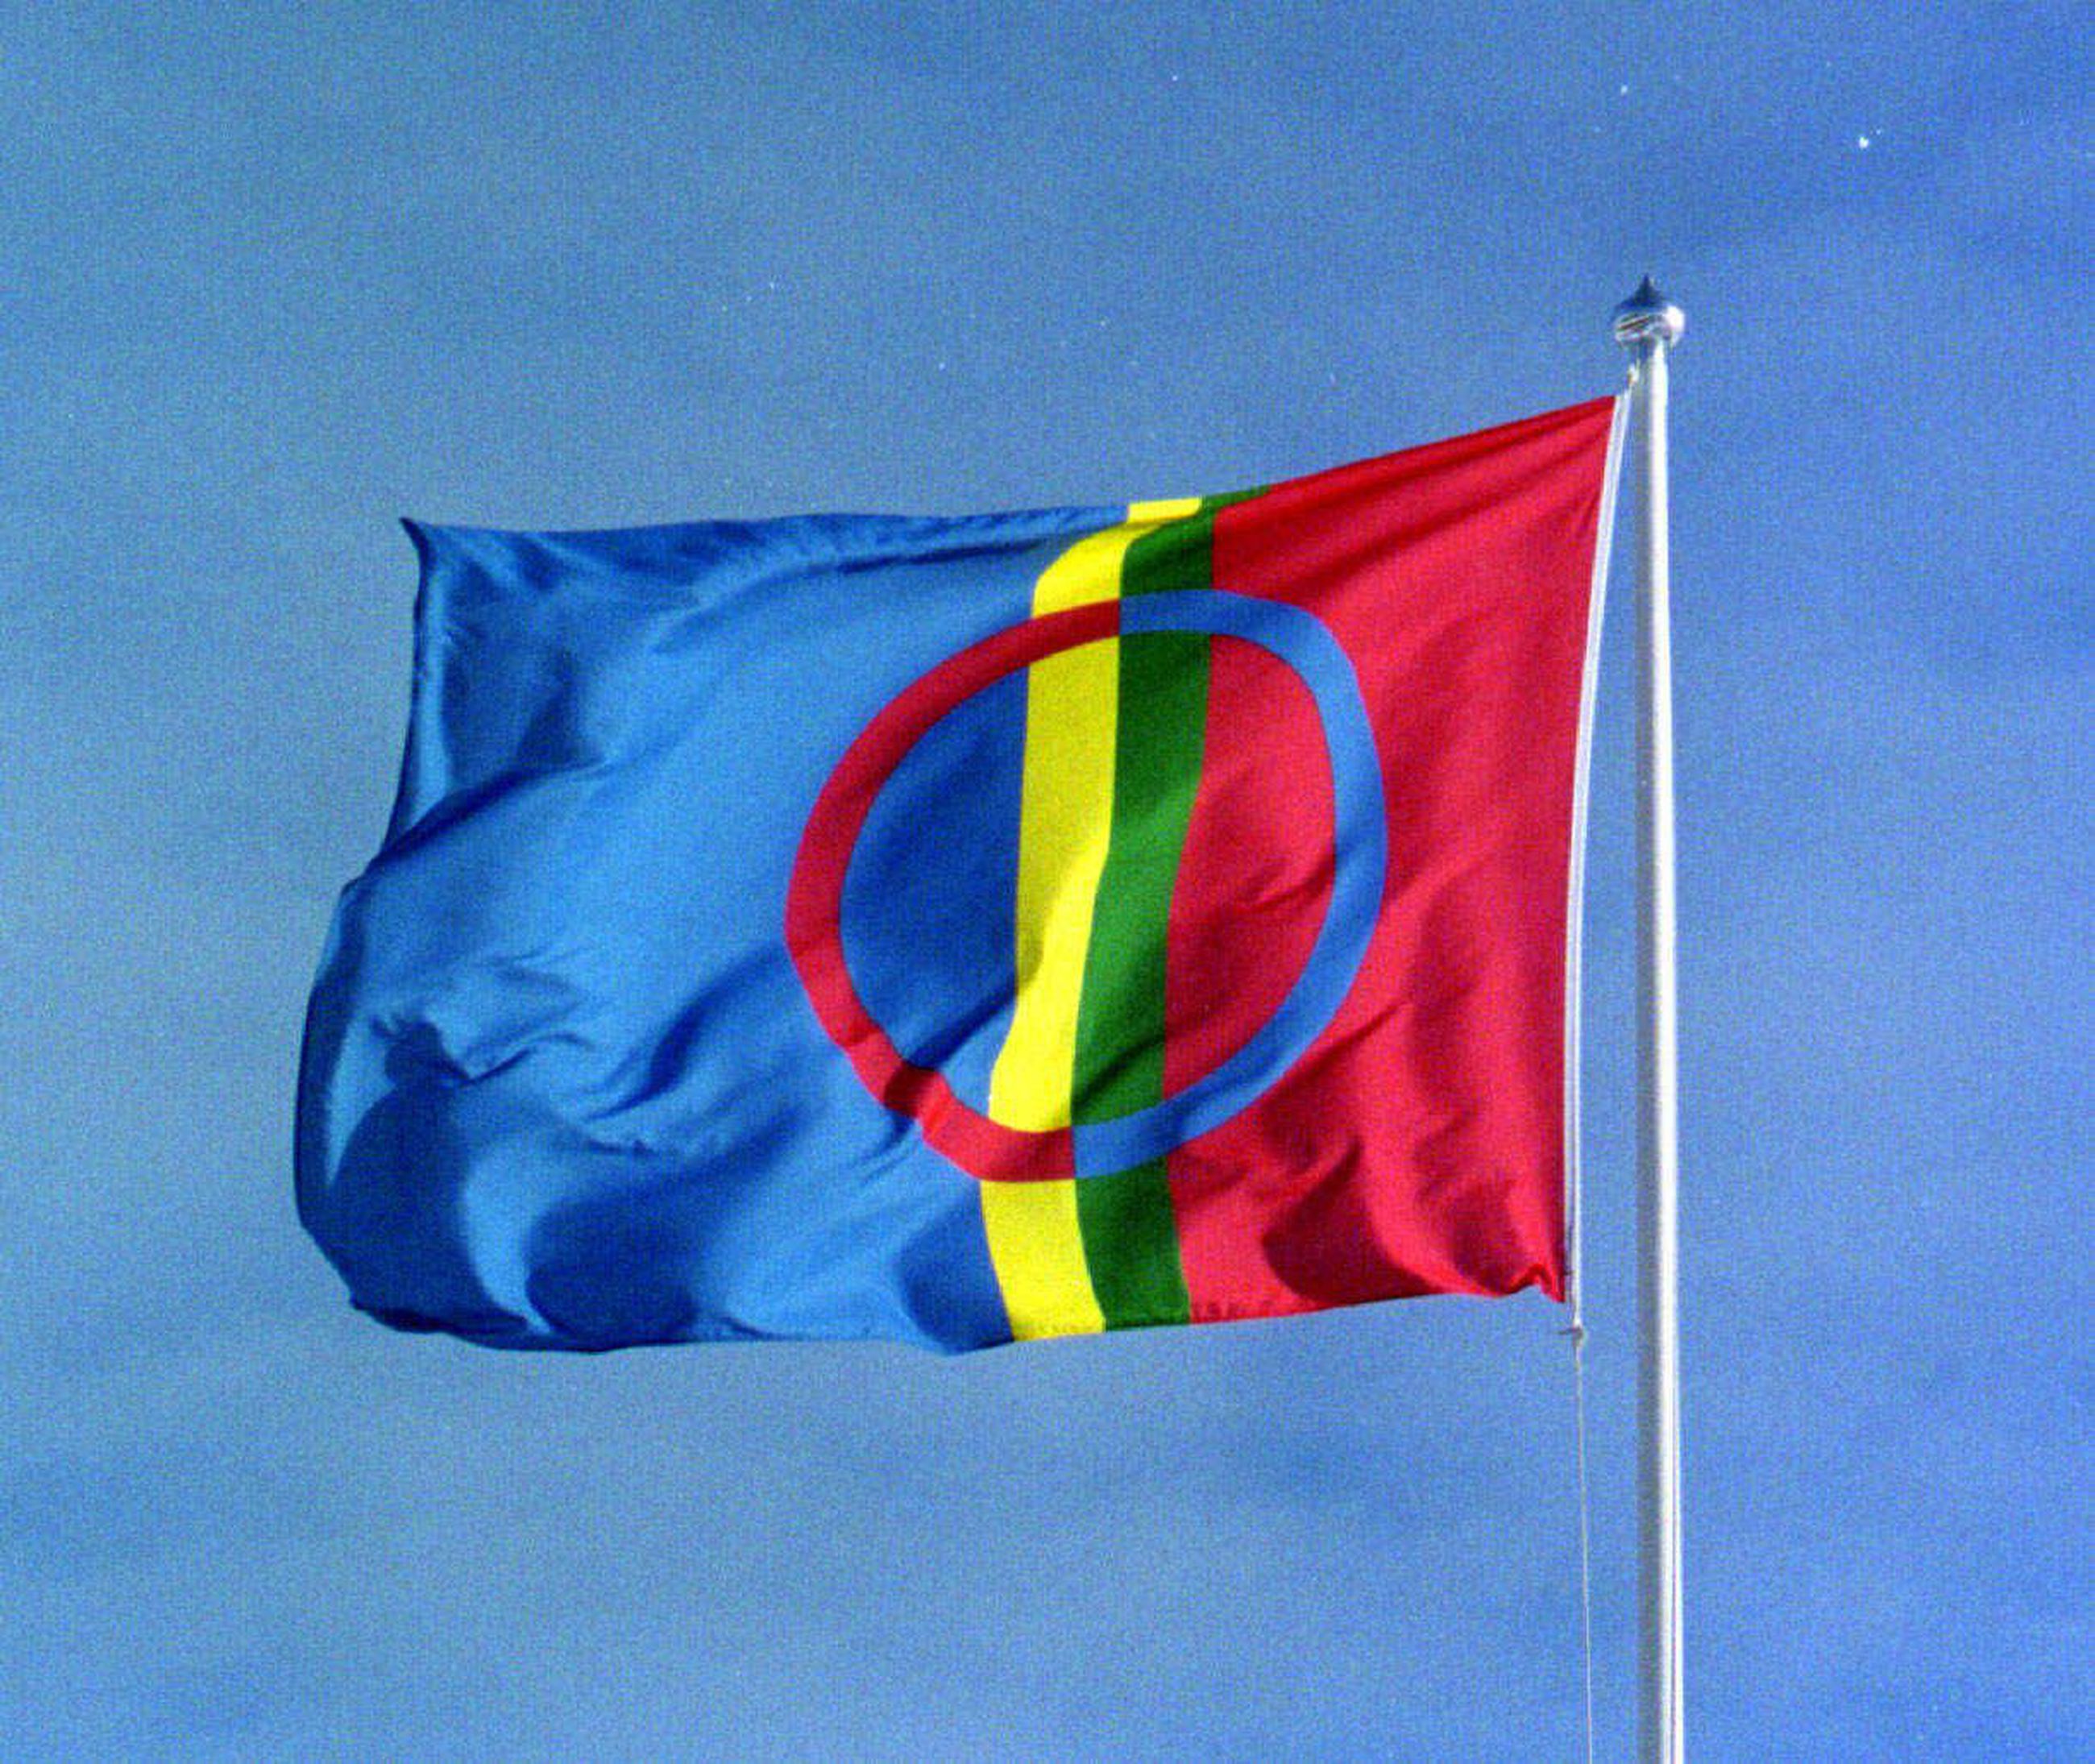 Saamelaisten kansallispäivän 30-vuotisjuhlaa vietetään tänään: 